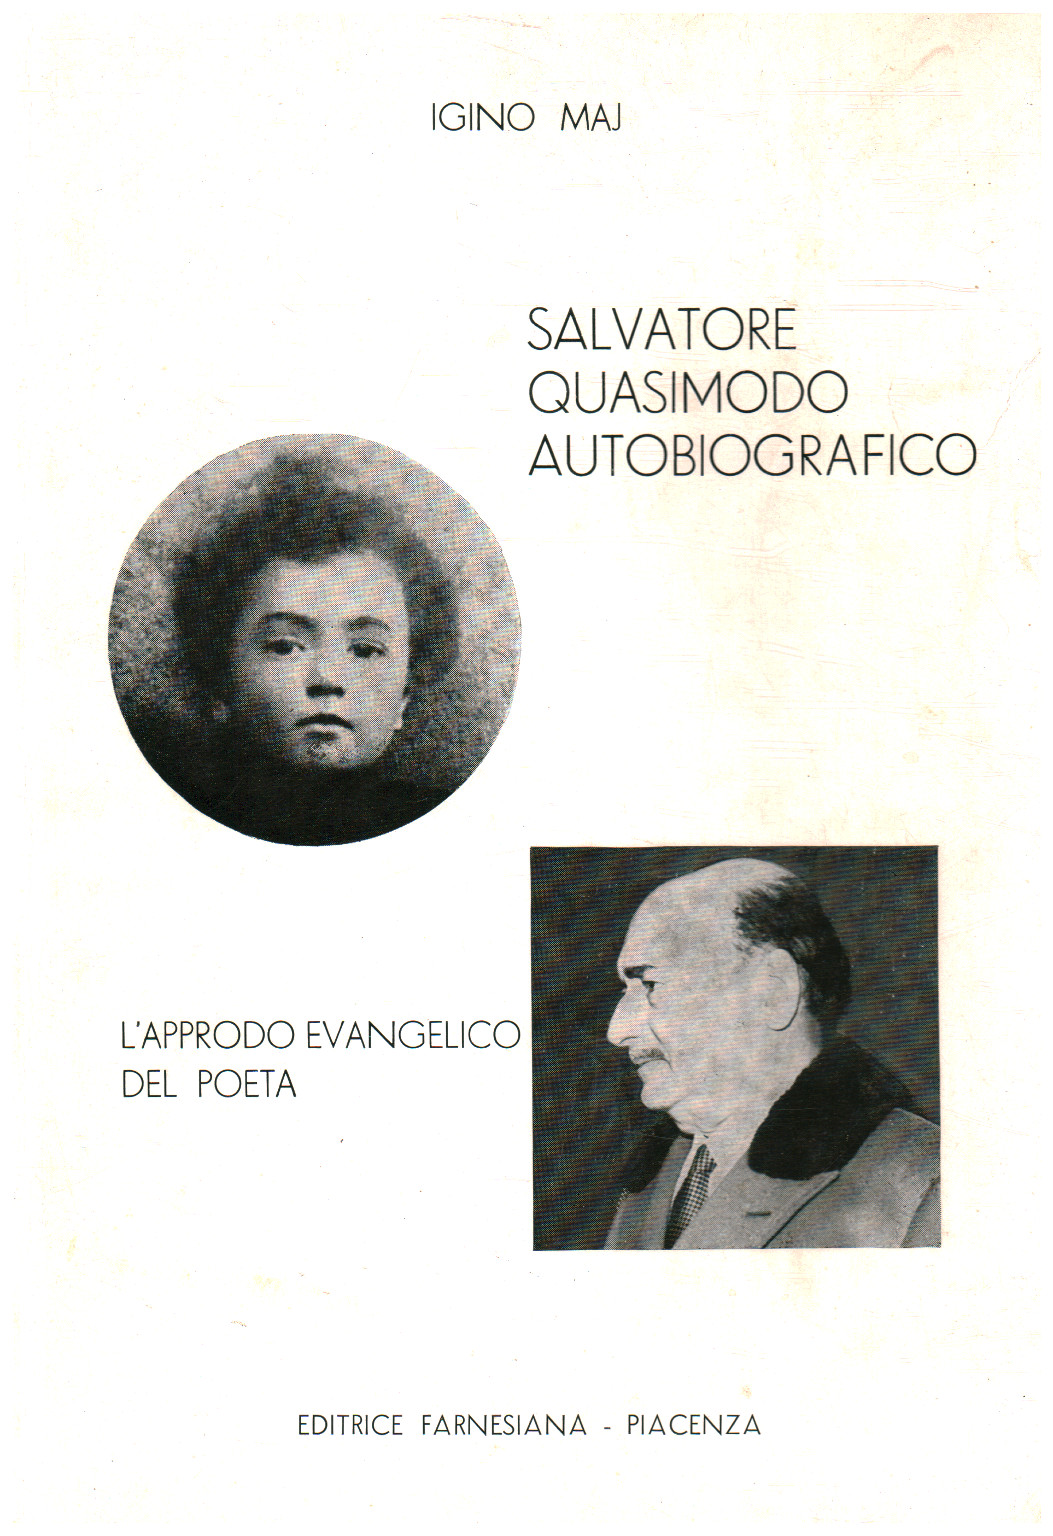 Salvatore Quasimodo autobiographical, s.a.